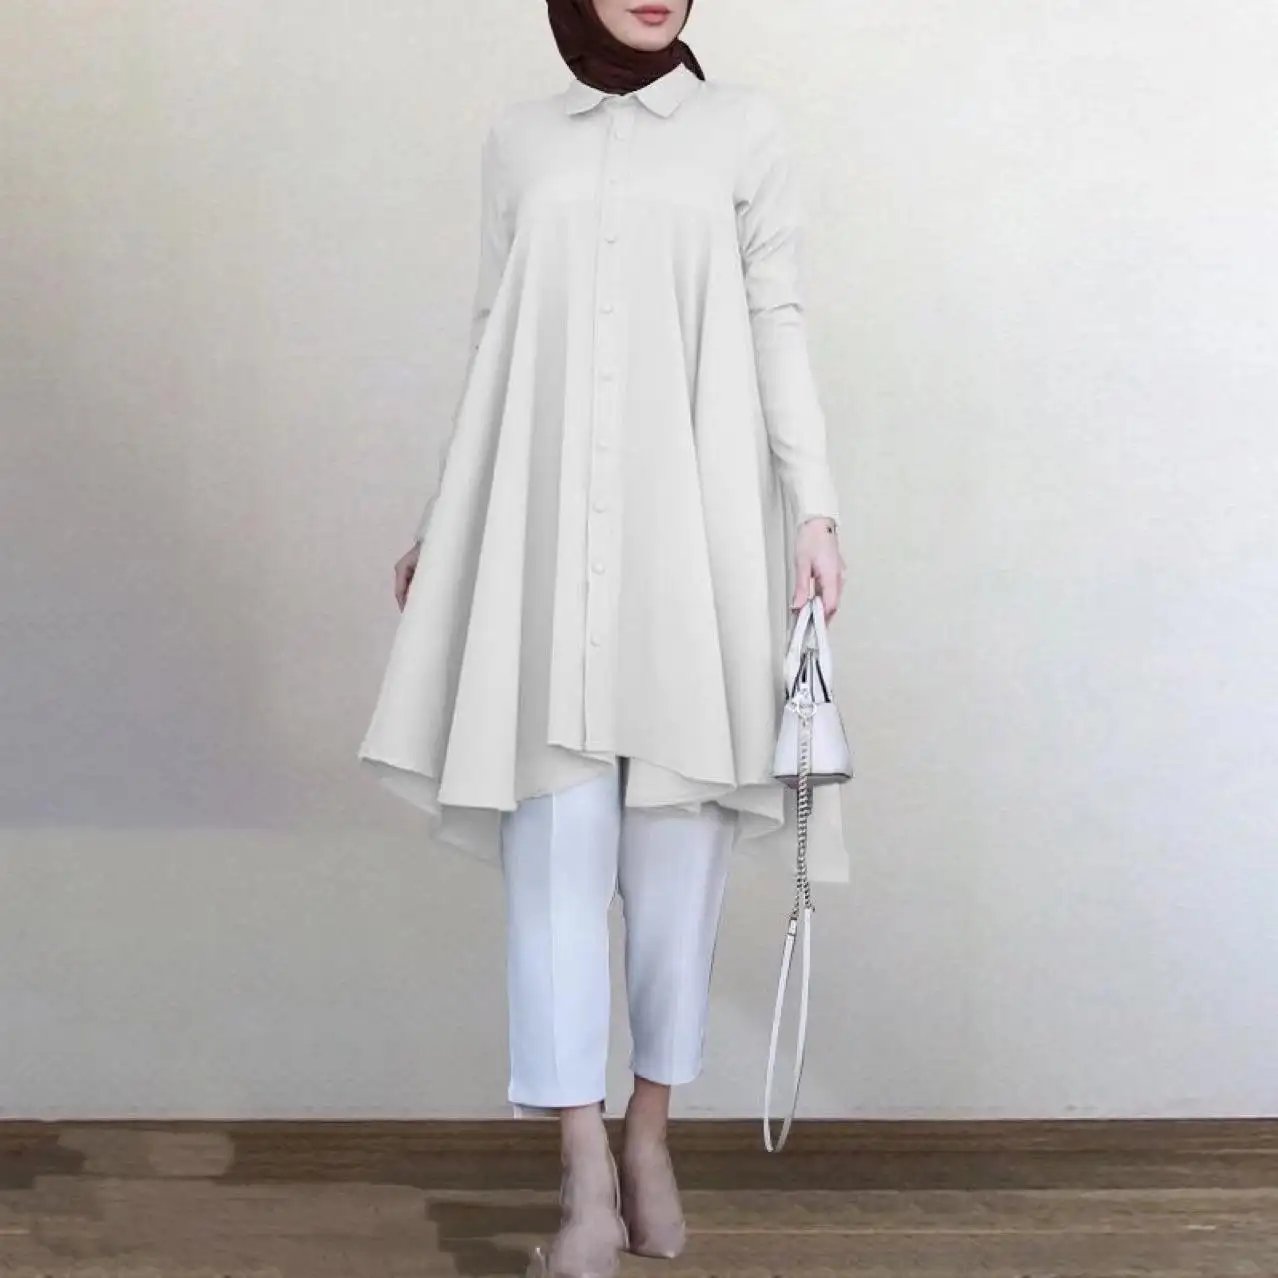 Blusa muçulmana plus size de manga comprida para mulheres, blusa de balanço, camisas islâmicas, cardigã longo, blusa de balanço para mulheres, venda imperdível